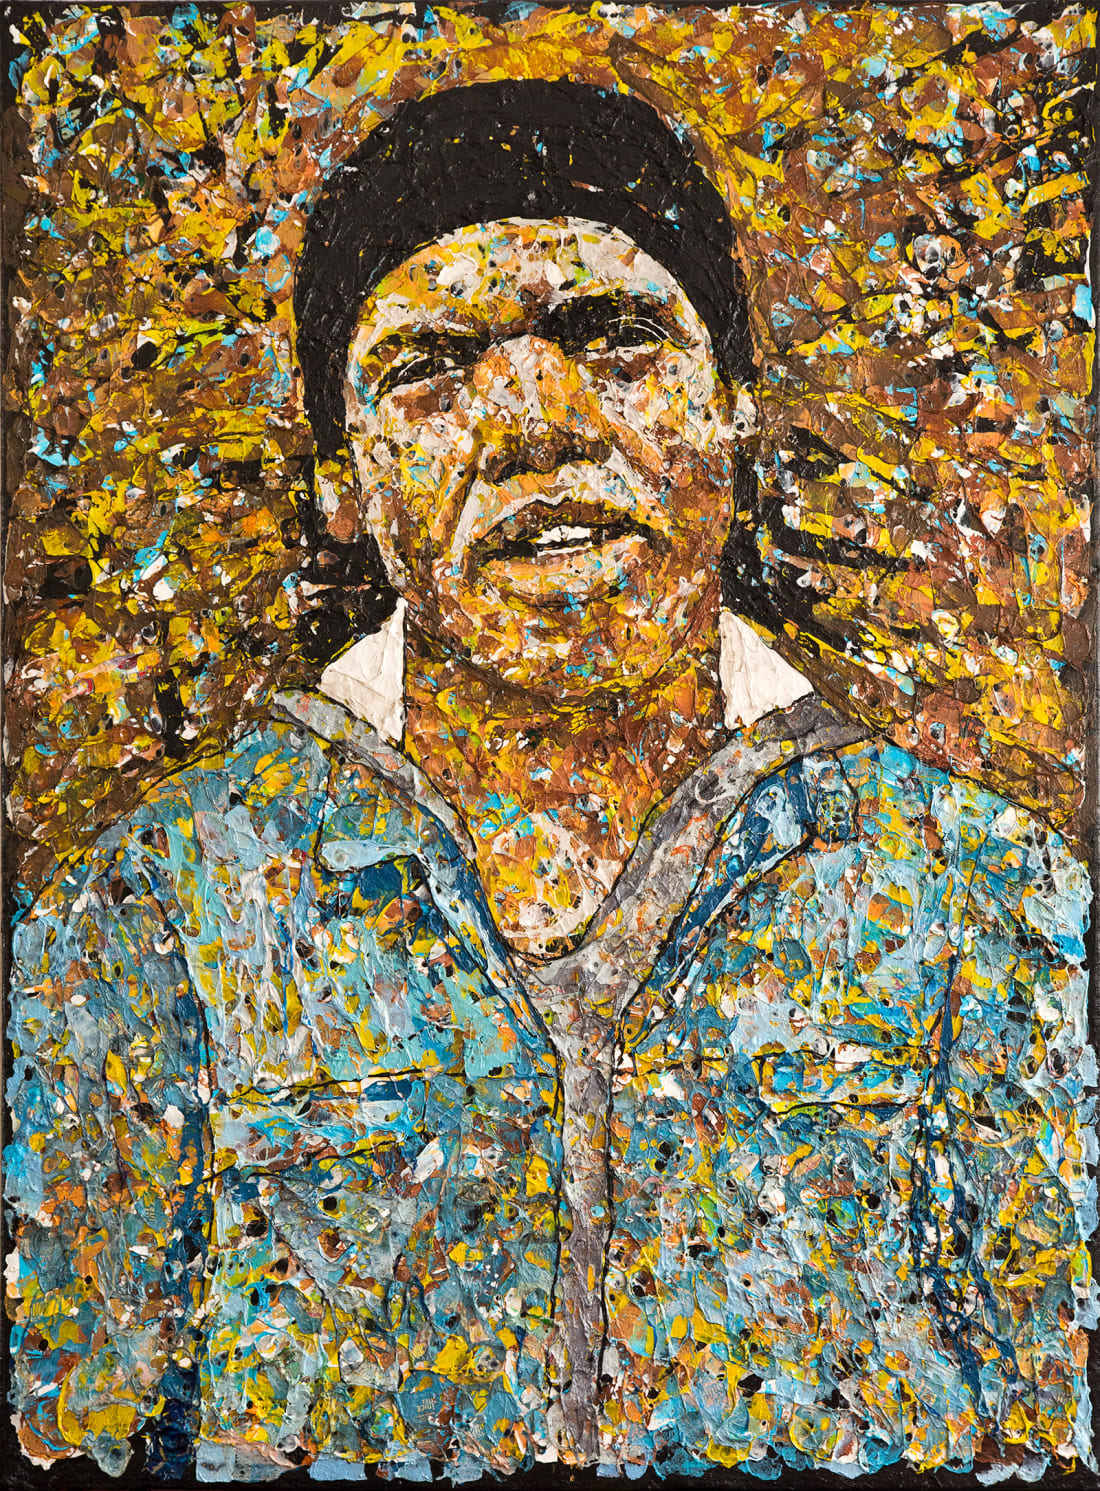 Họa sĩ Nam Phi vẽ tranh từ rác thải nhựa, kết quả là những tác phẩm kinh ngạc đến mức khó tin - Ảnh 1.